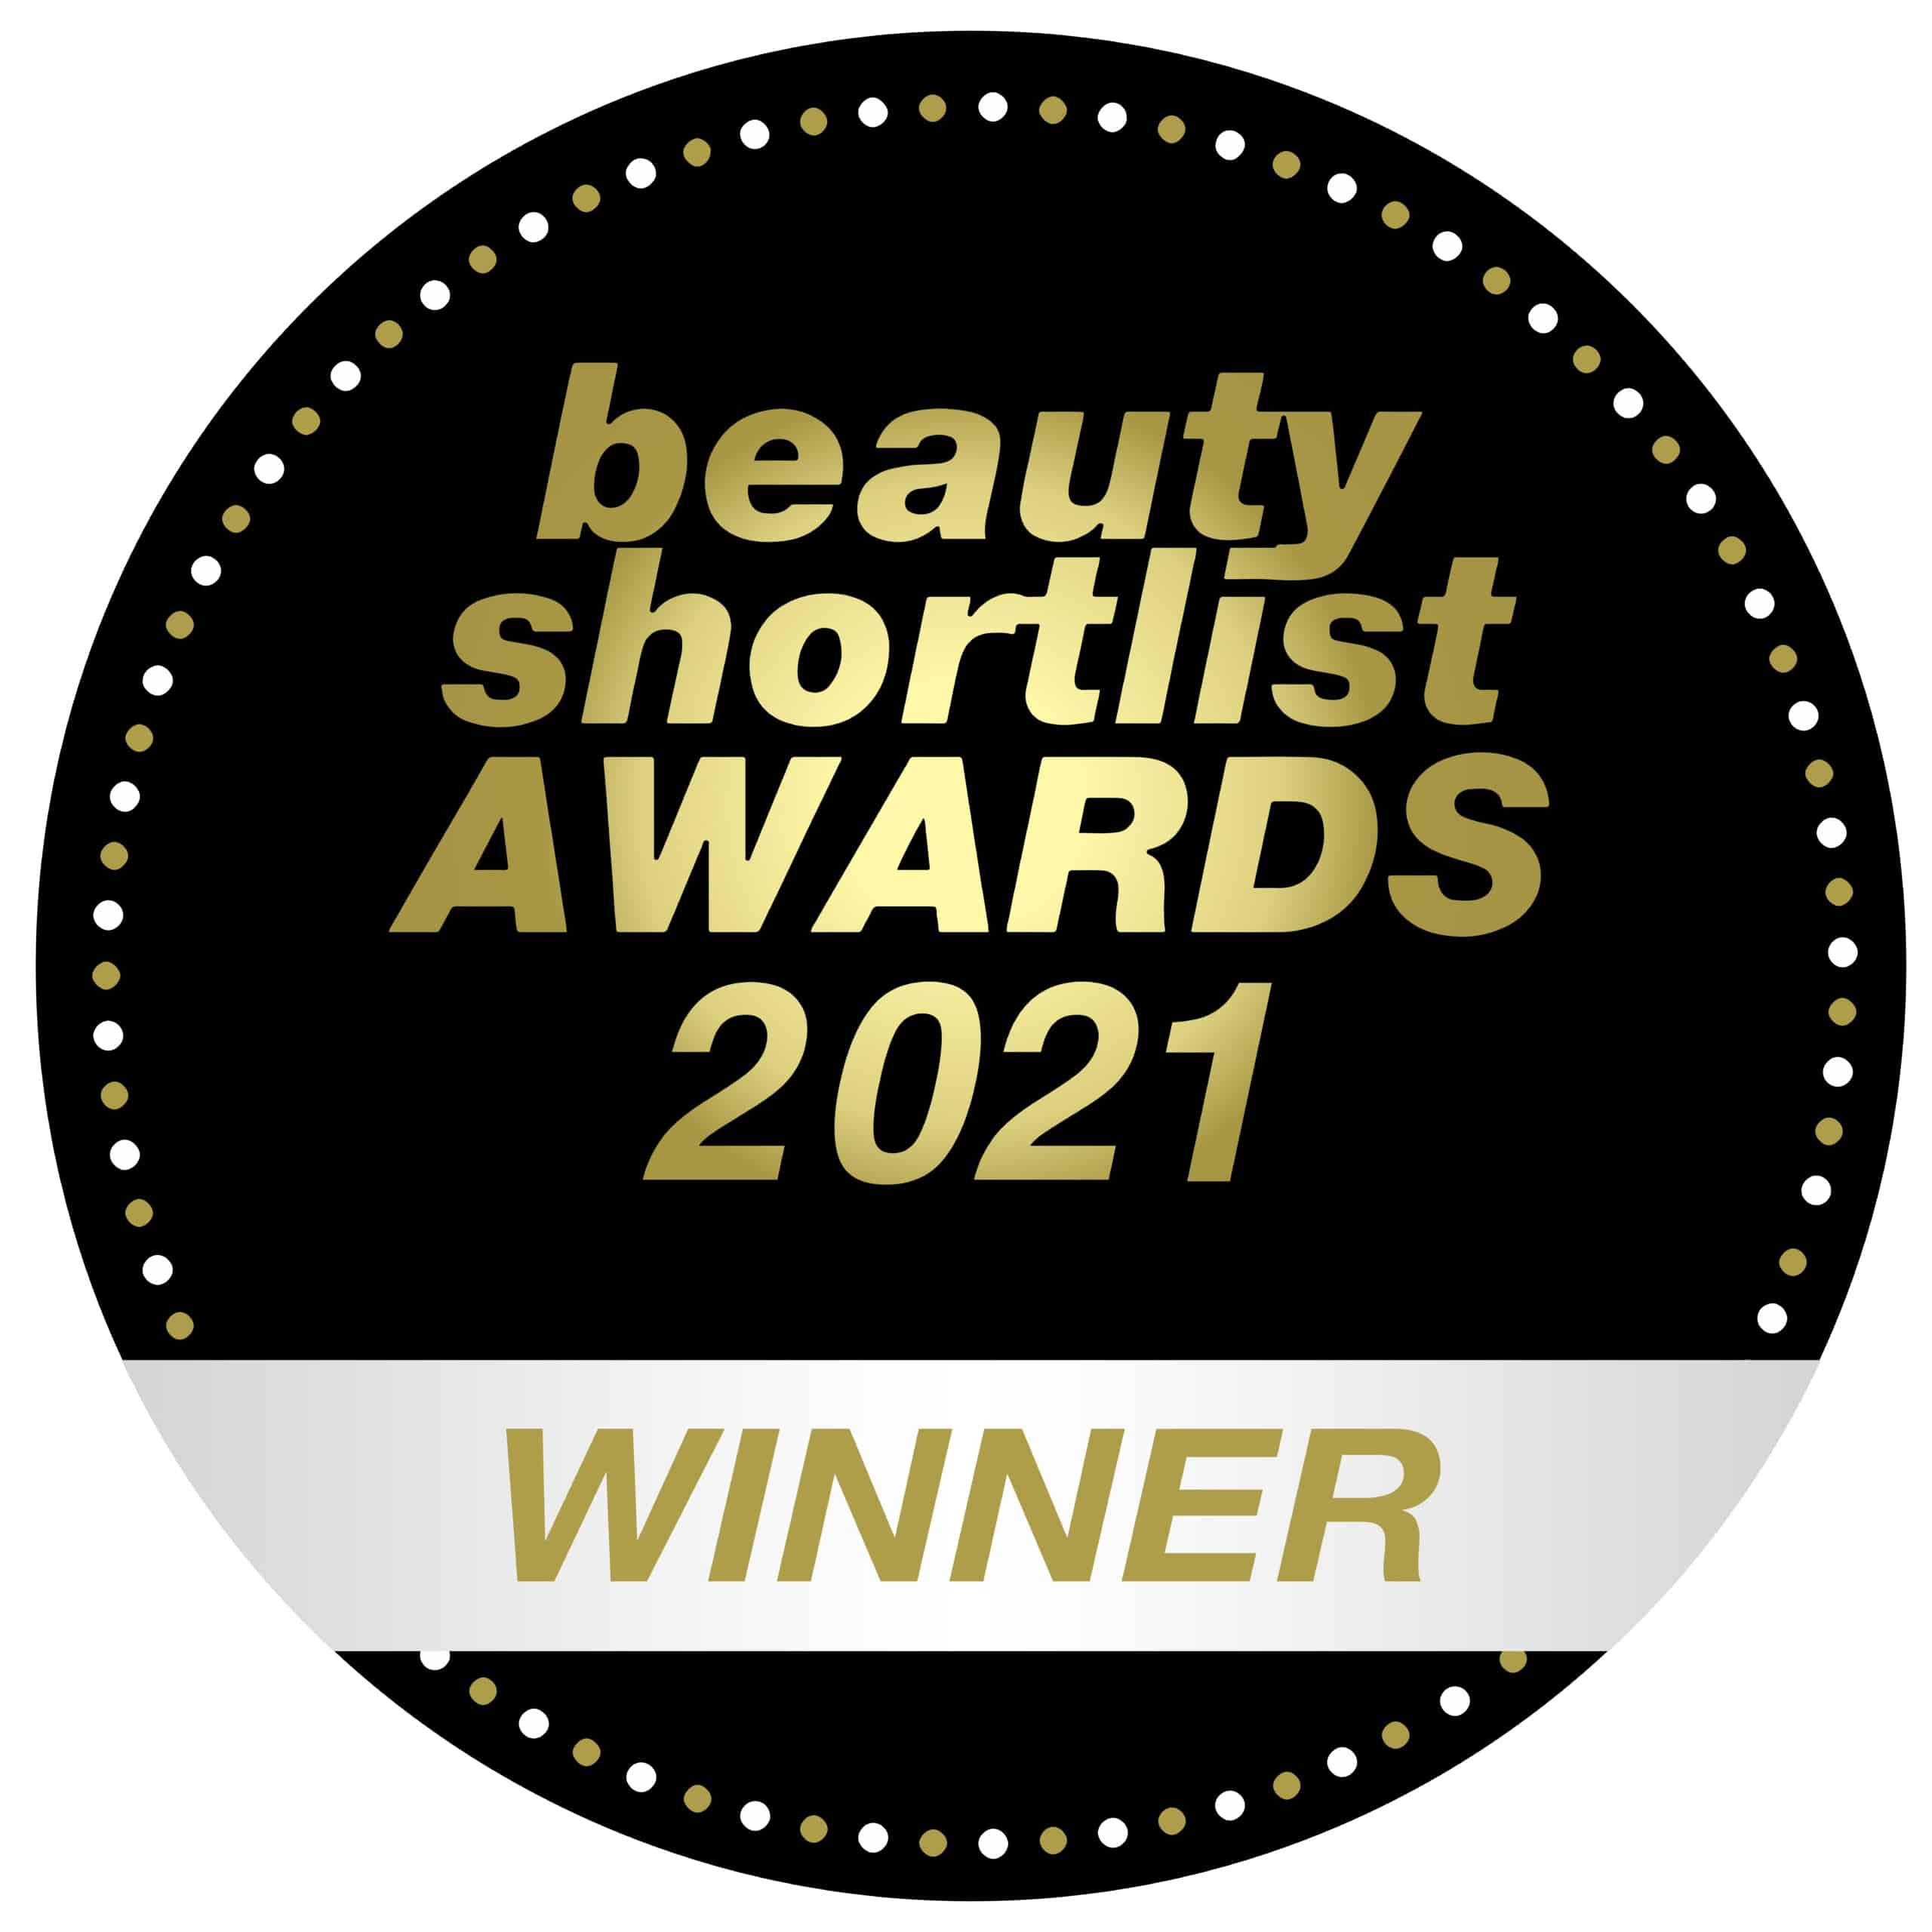 beauty shortlist awards 2021 winner